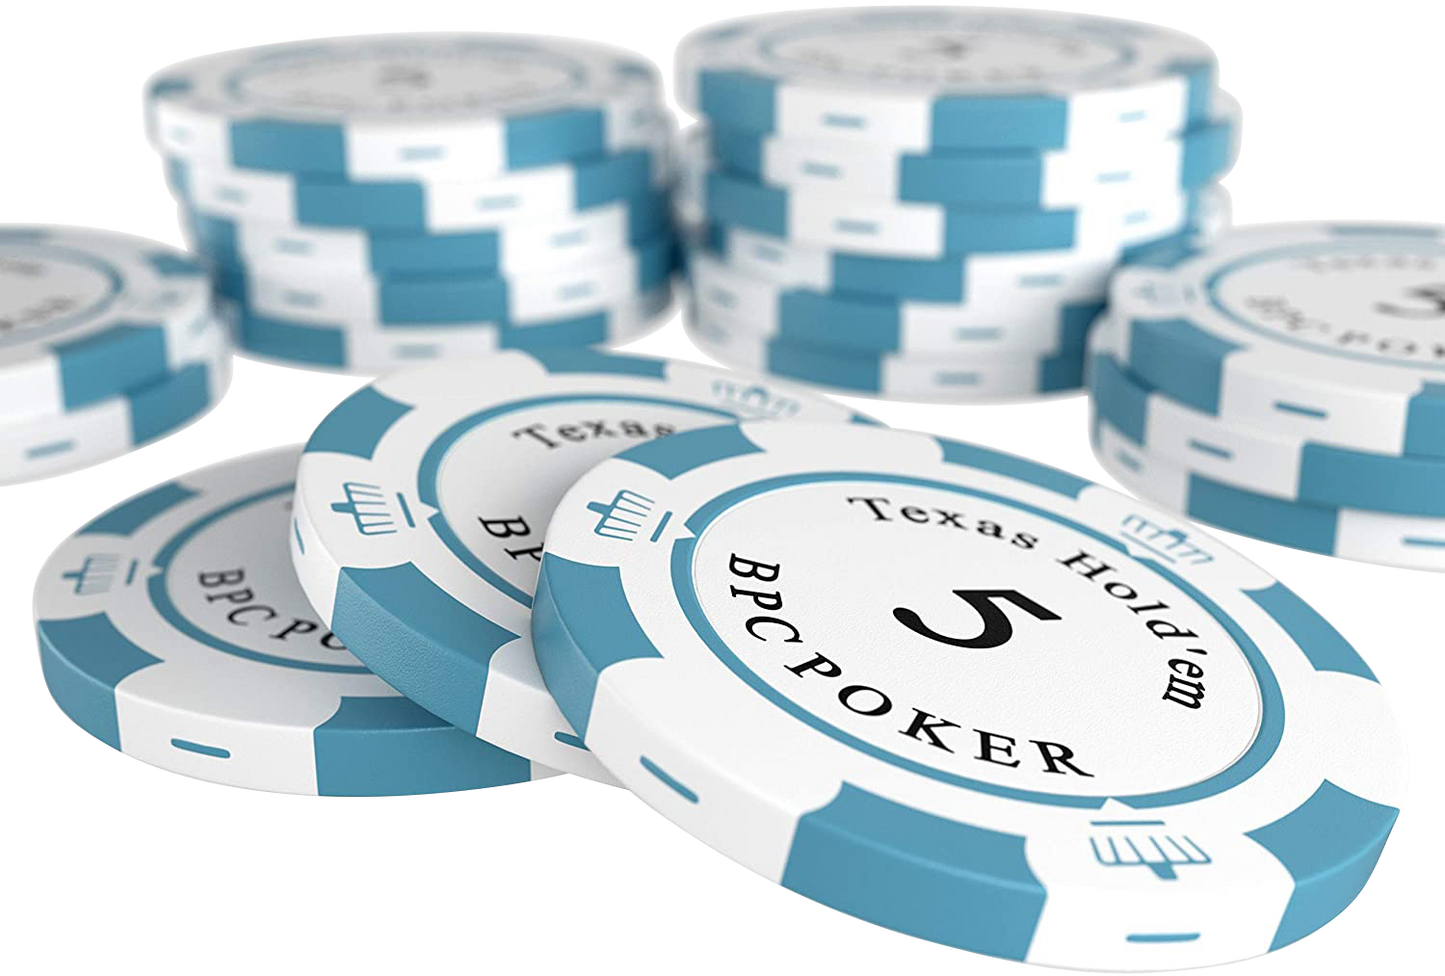 Jetons de poker en argile "Carmela" avec valeurs - Rouleau de 25